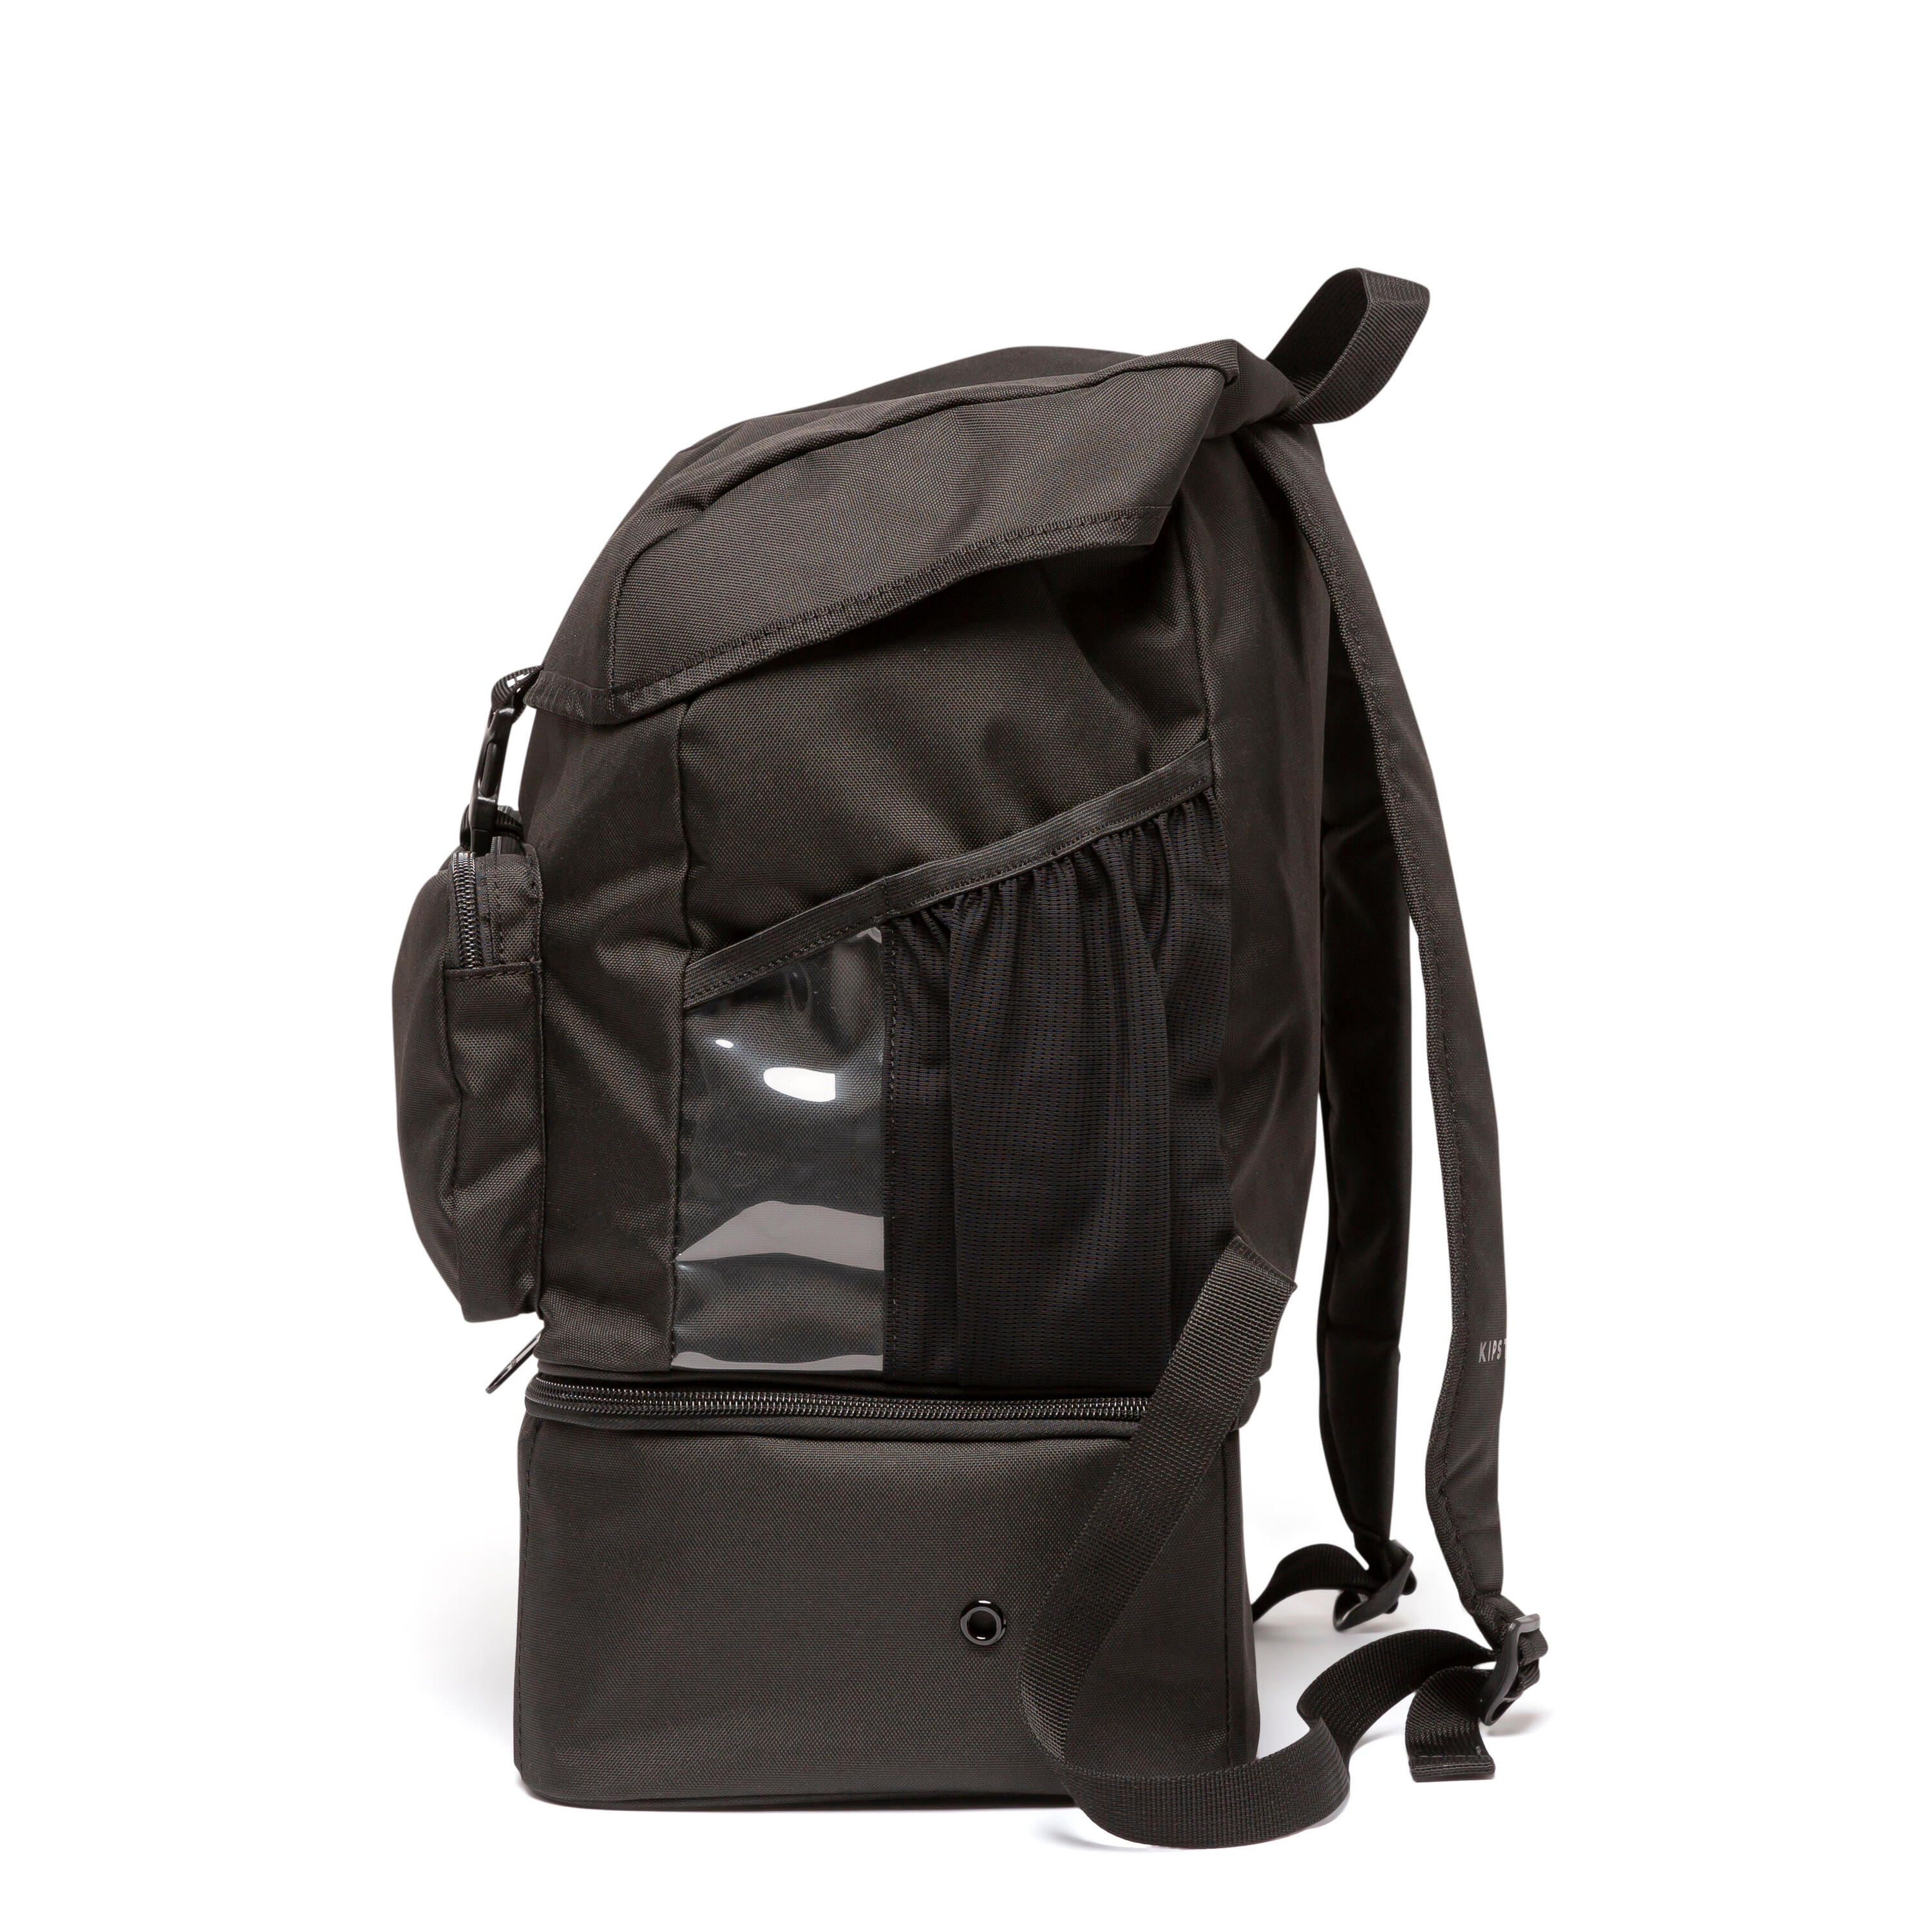 30 L Backpack Hardcase - Black 7/8